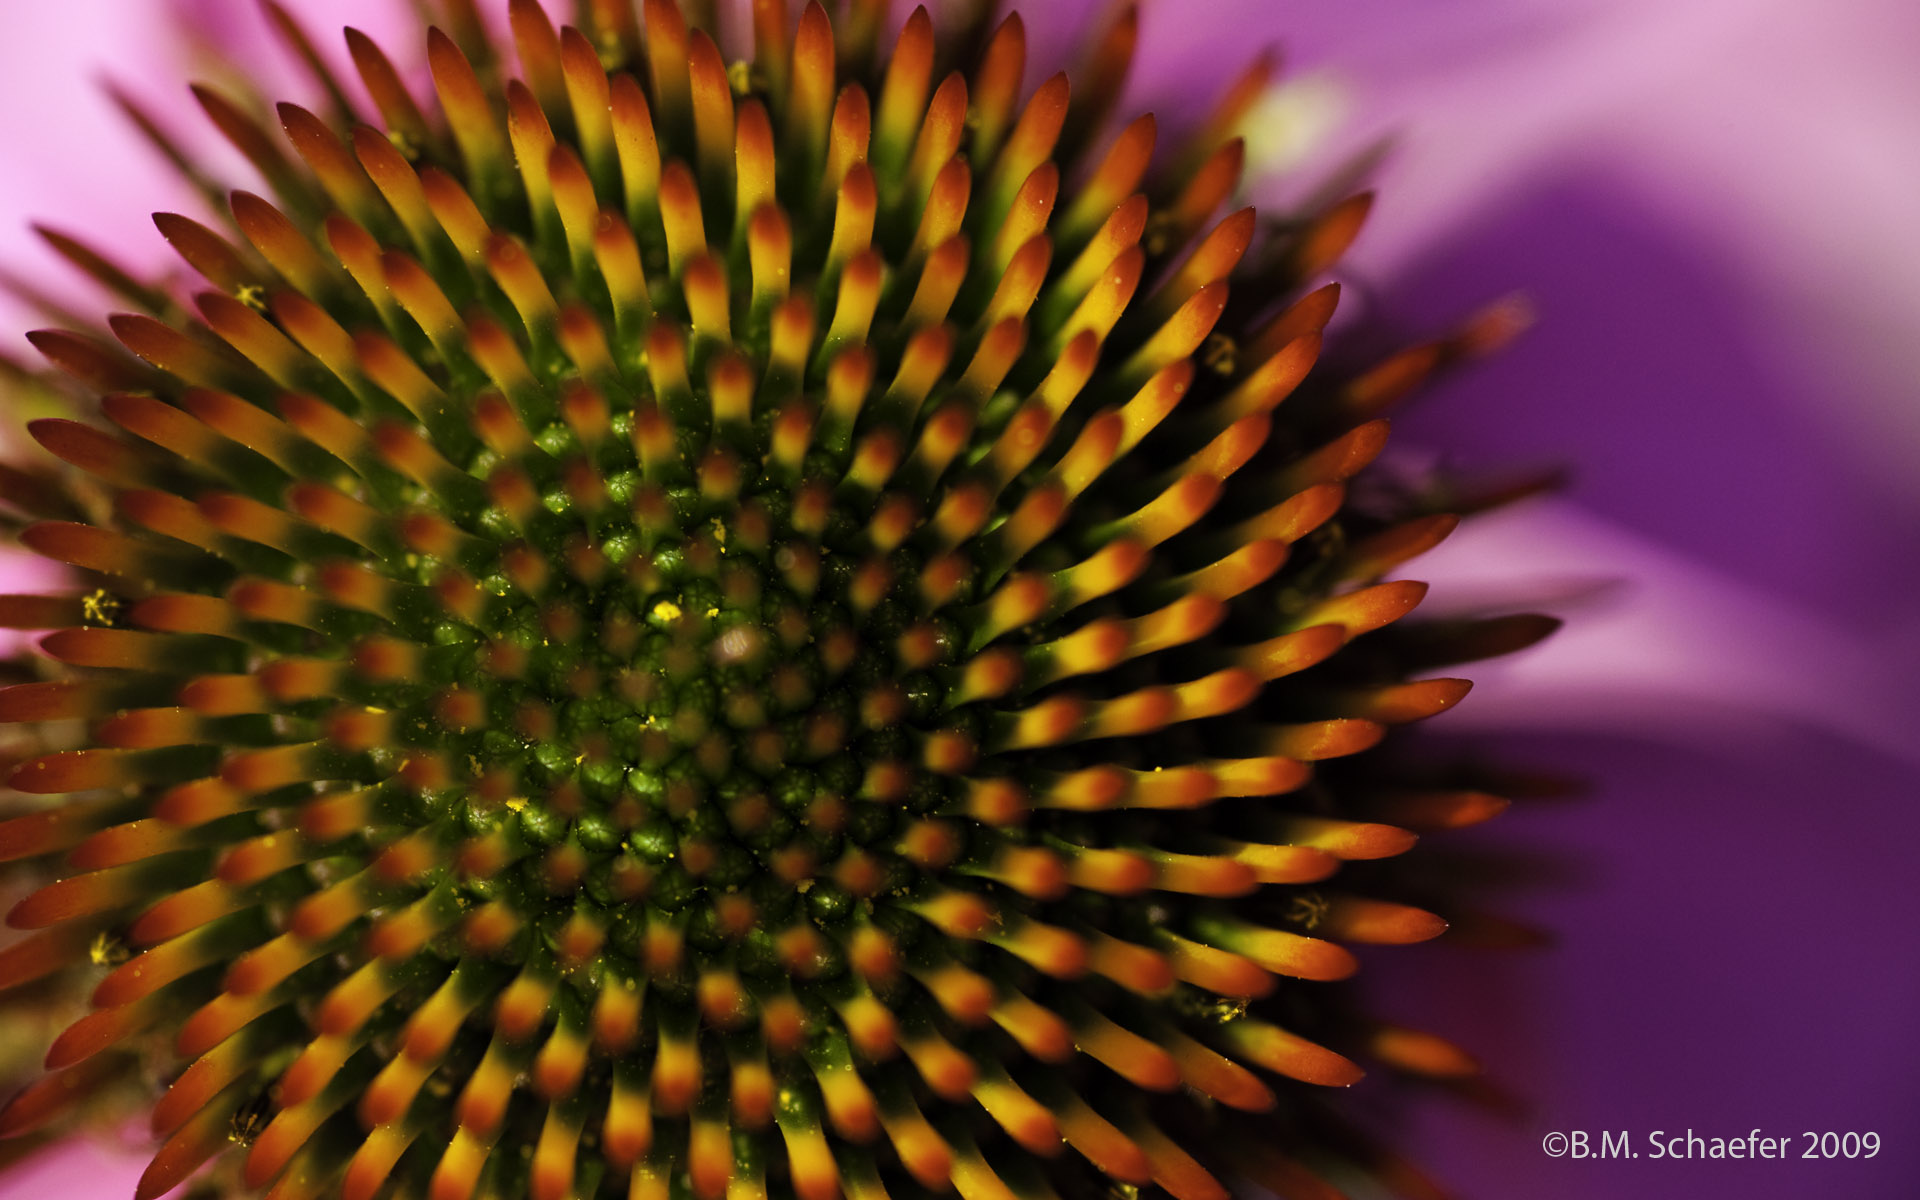 fibonacci sequence visualized in nature